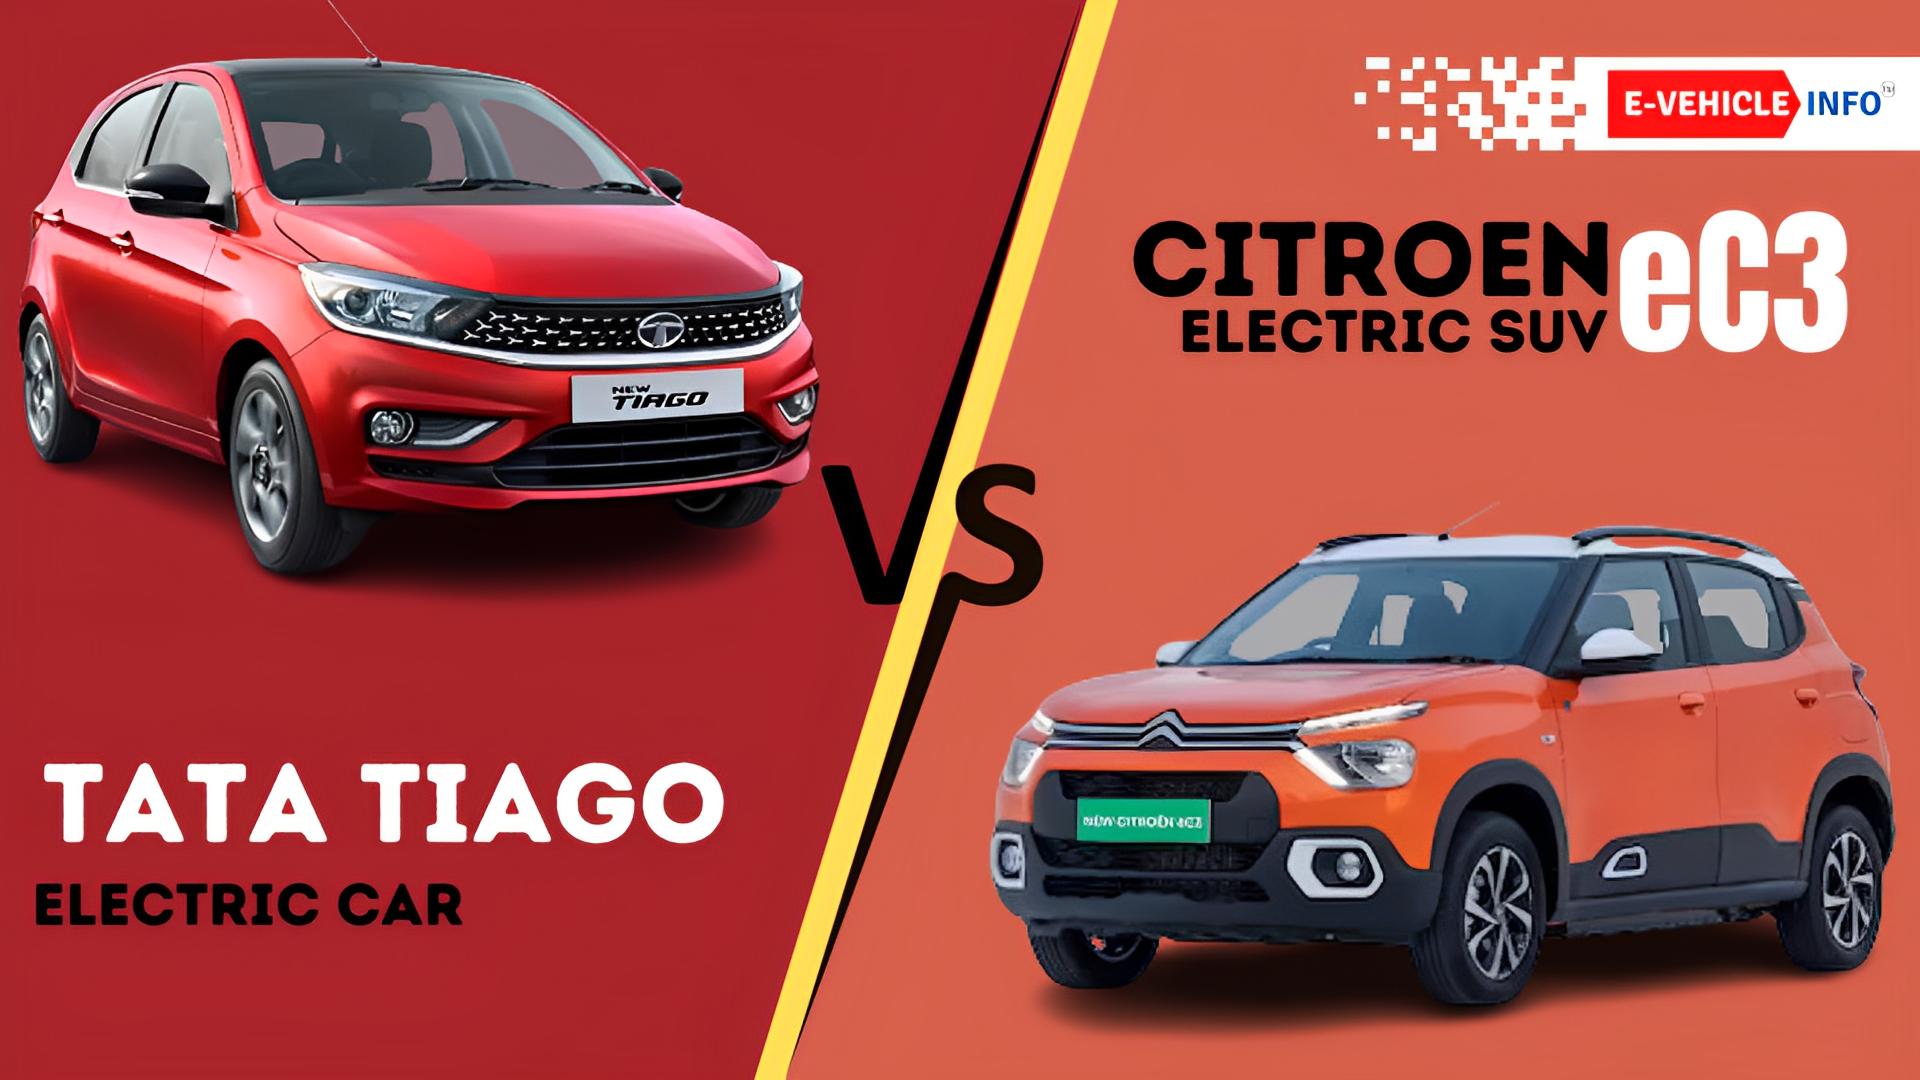 https://e-vehicleinfo.com/citroen-ec3-vs-tata-tiago-ev-best-electric-car-in-india/